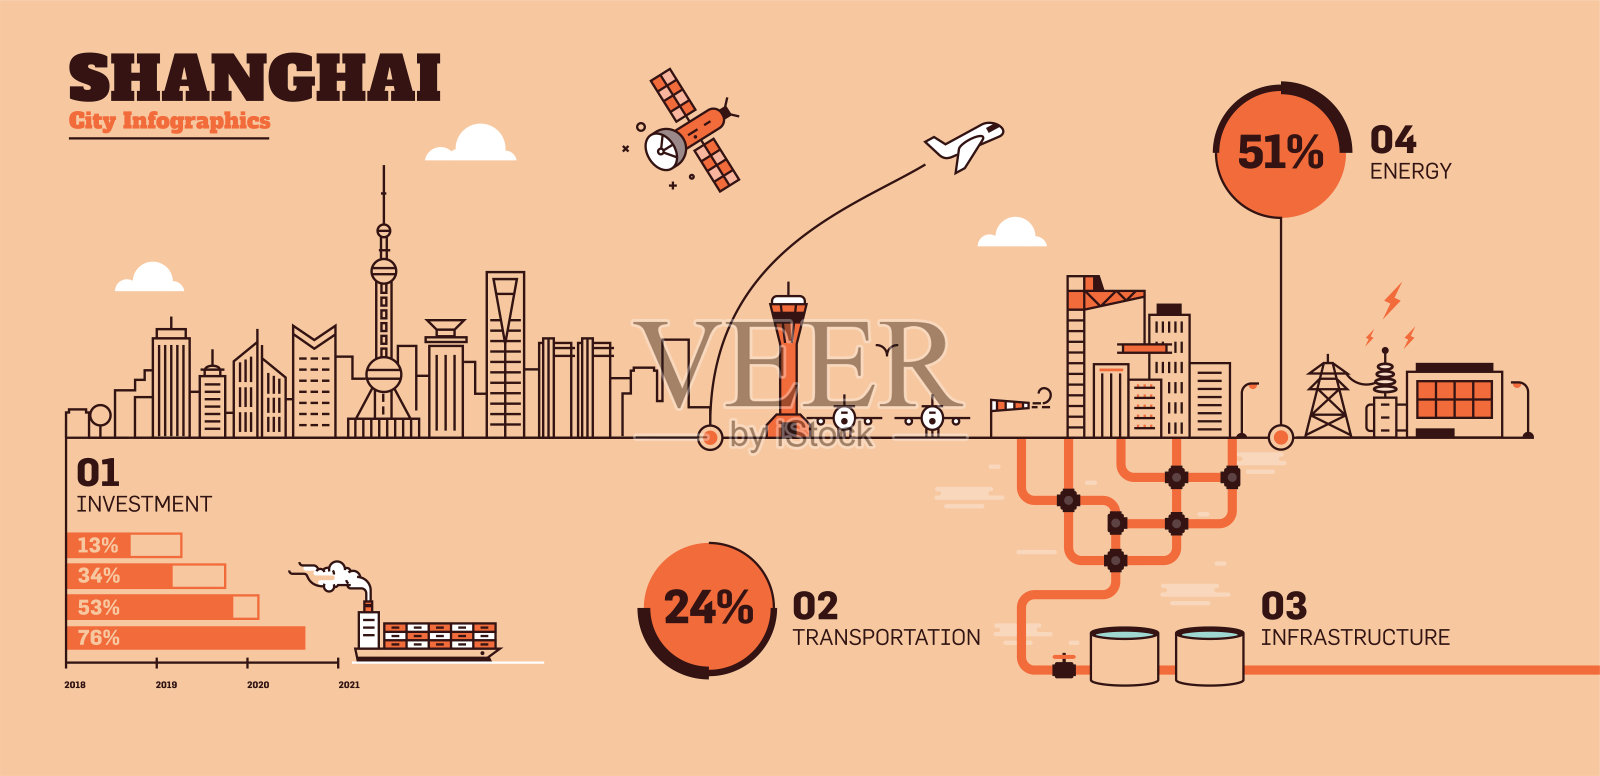 上海城市平面设计基础设施信息图模板插画图片素材